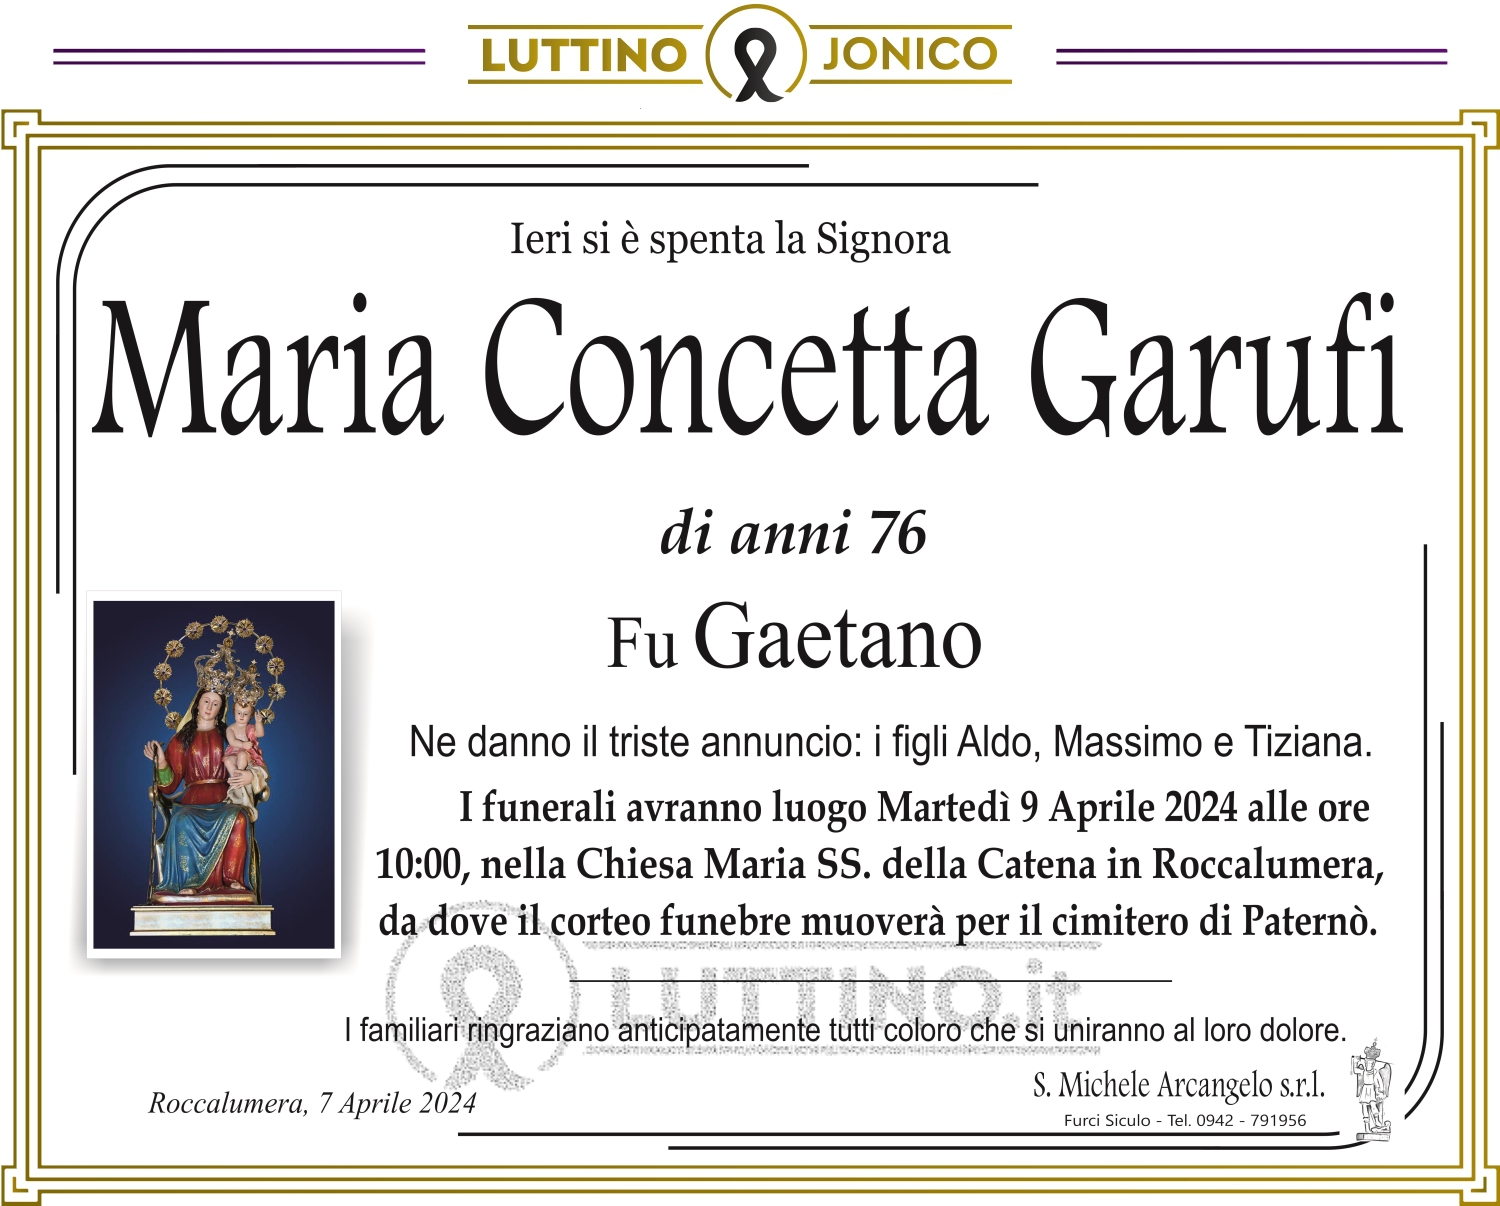 Maria Concetta Garufi